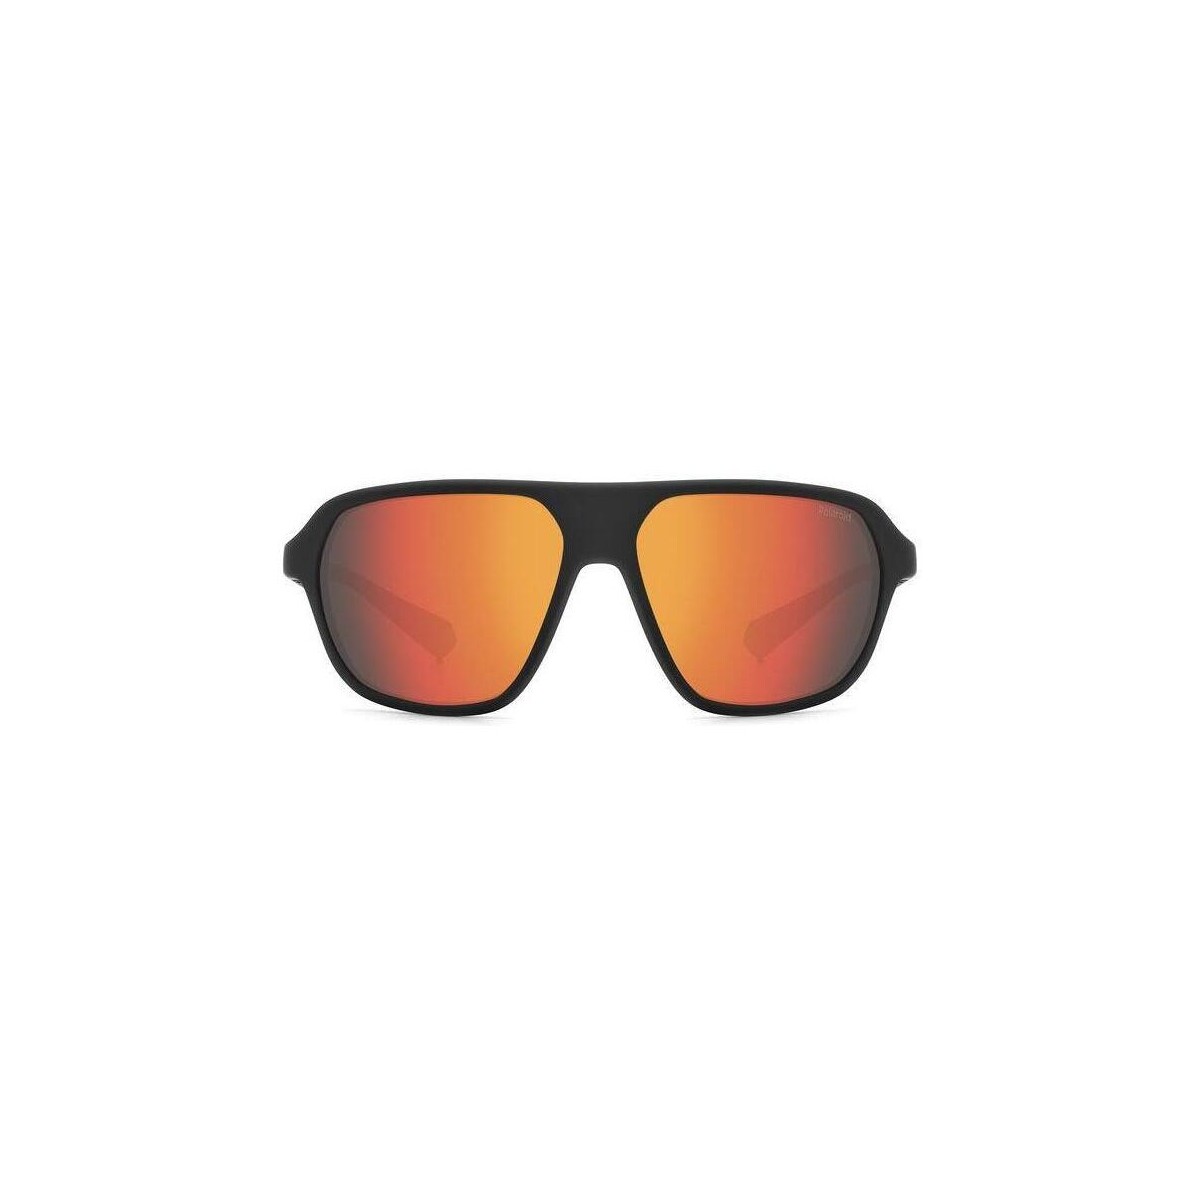 Orologi & Gioielli Occhiali da sole Polaroid PLD 2152/S Occhiali da sole, Nero/Arancione, 59 mm Nero